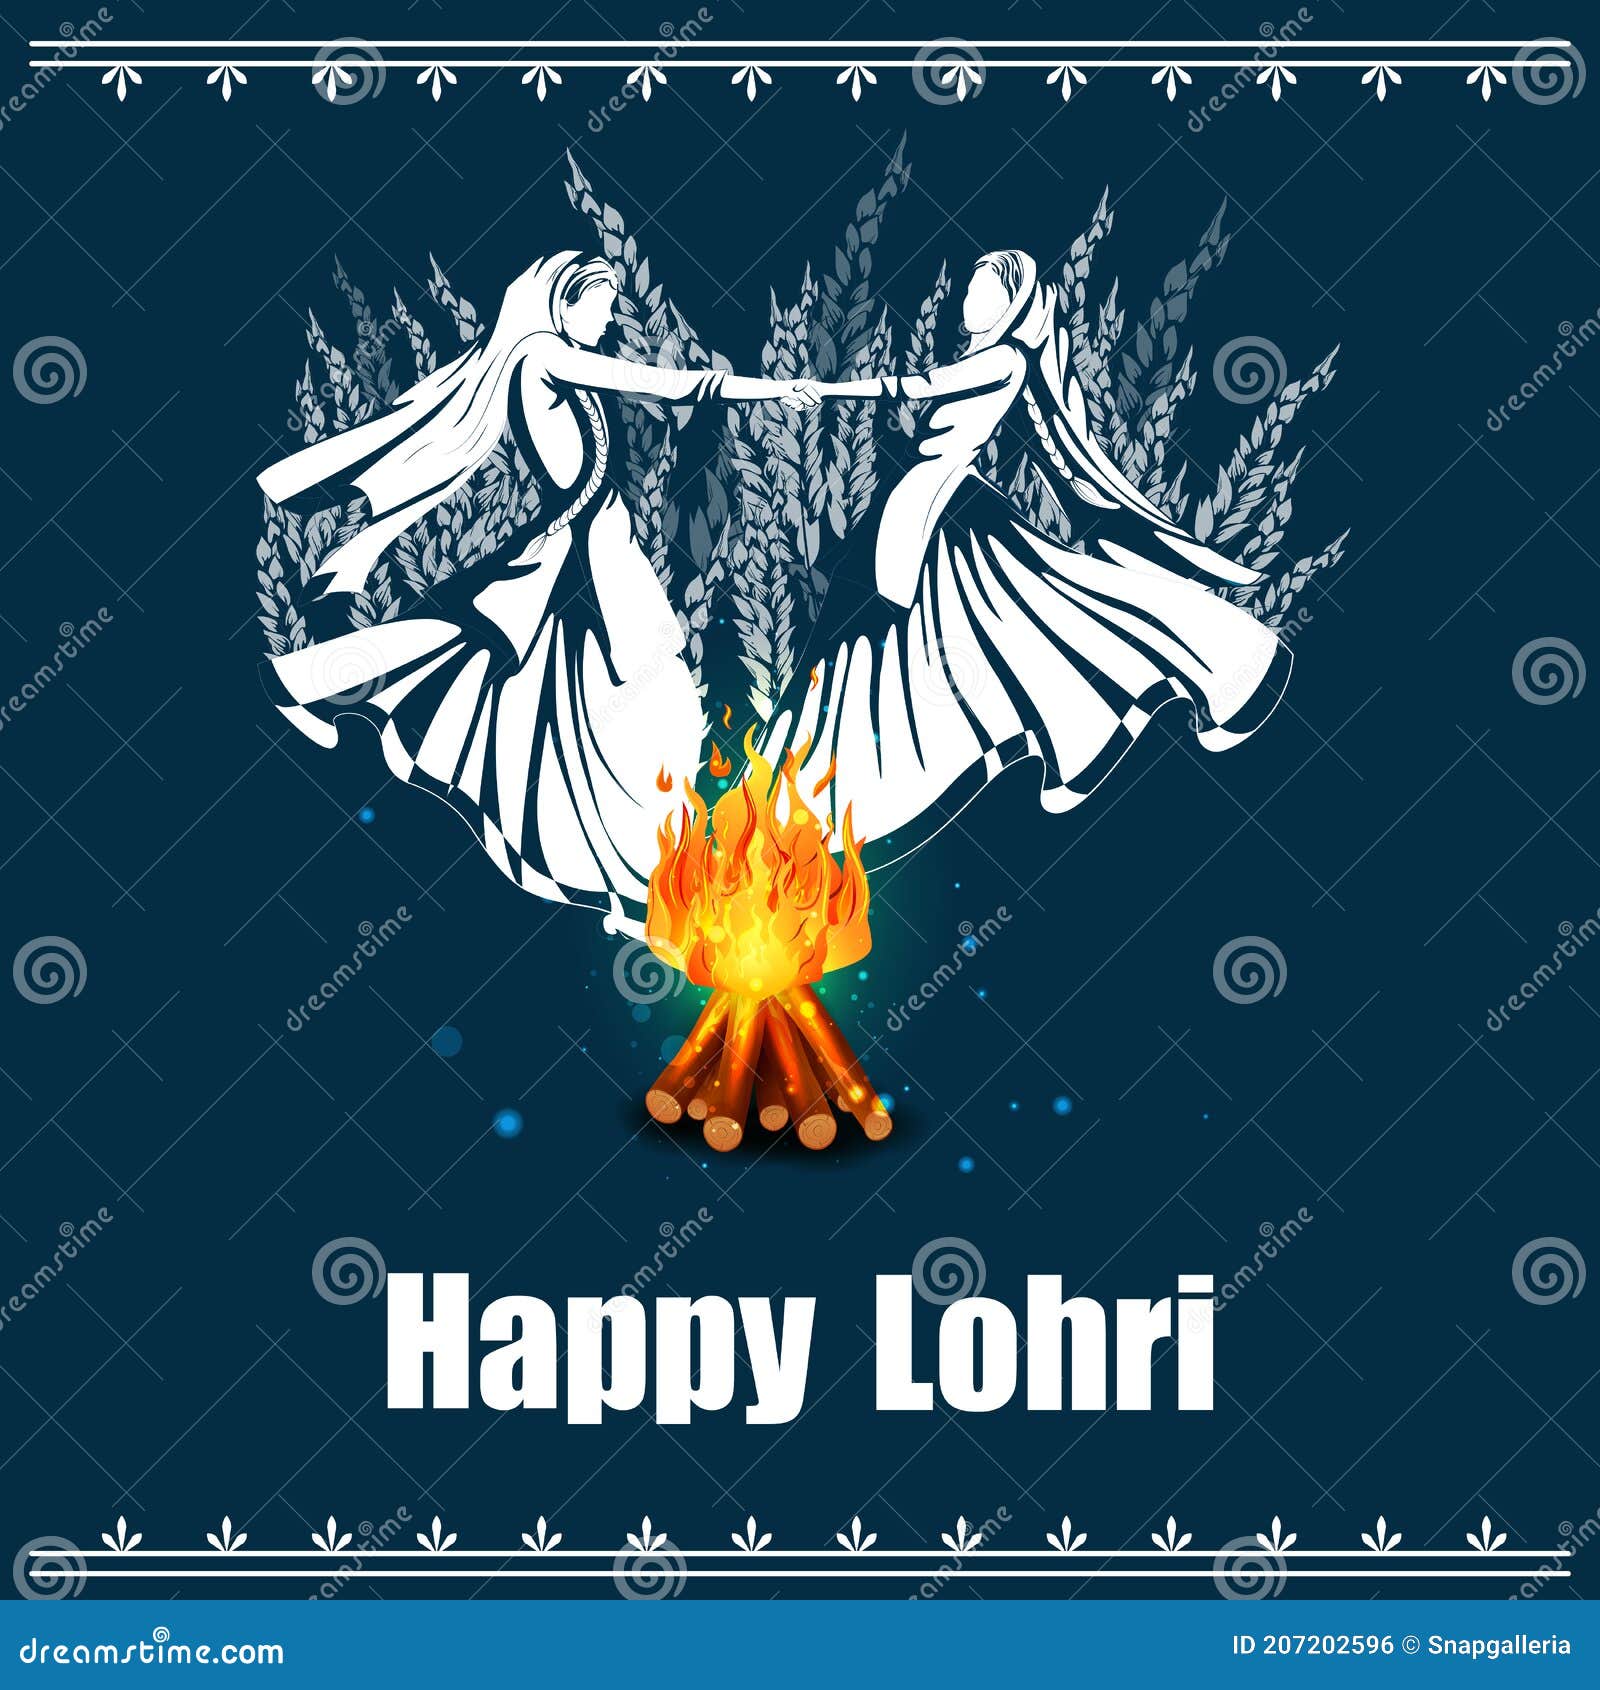 Happy Lohri Festival of Punjab India Background Stock Illustration -  Illustration of ritual, vaisakhi: 207202596